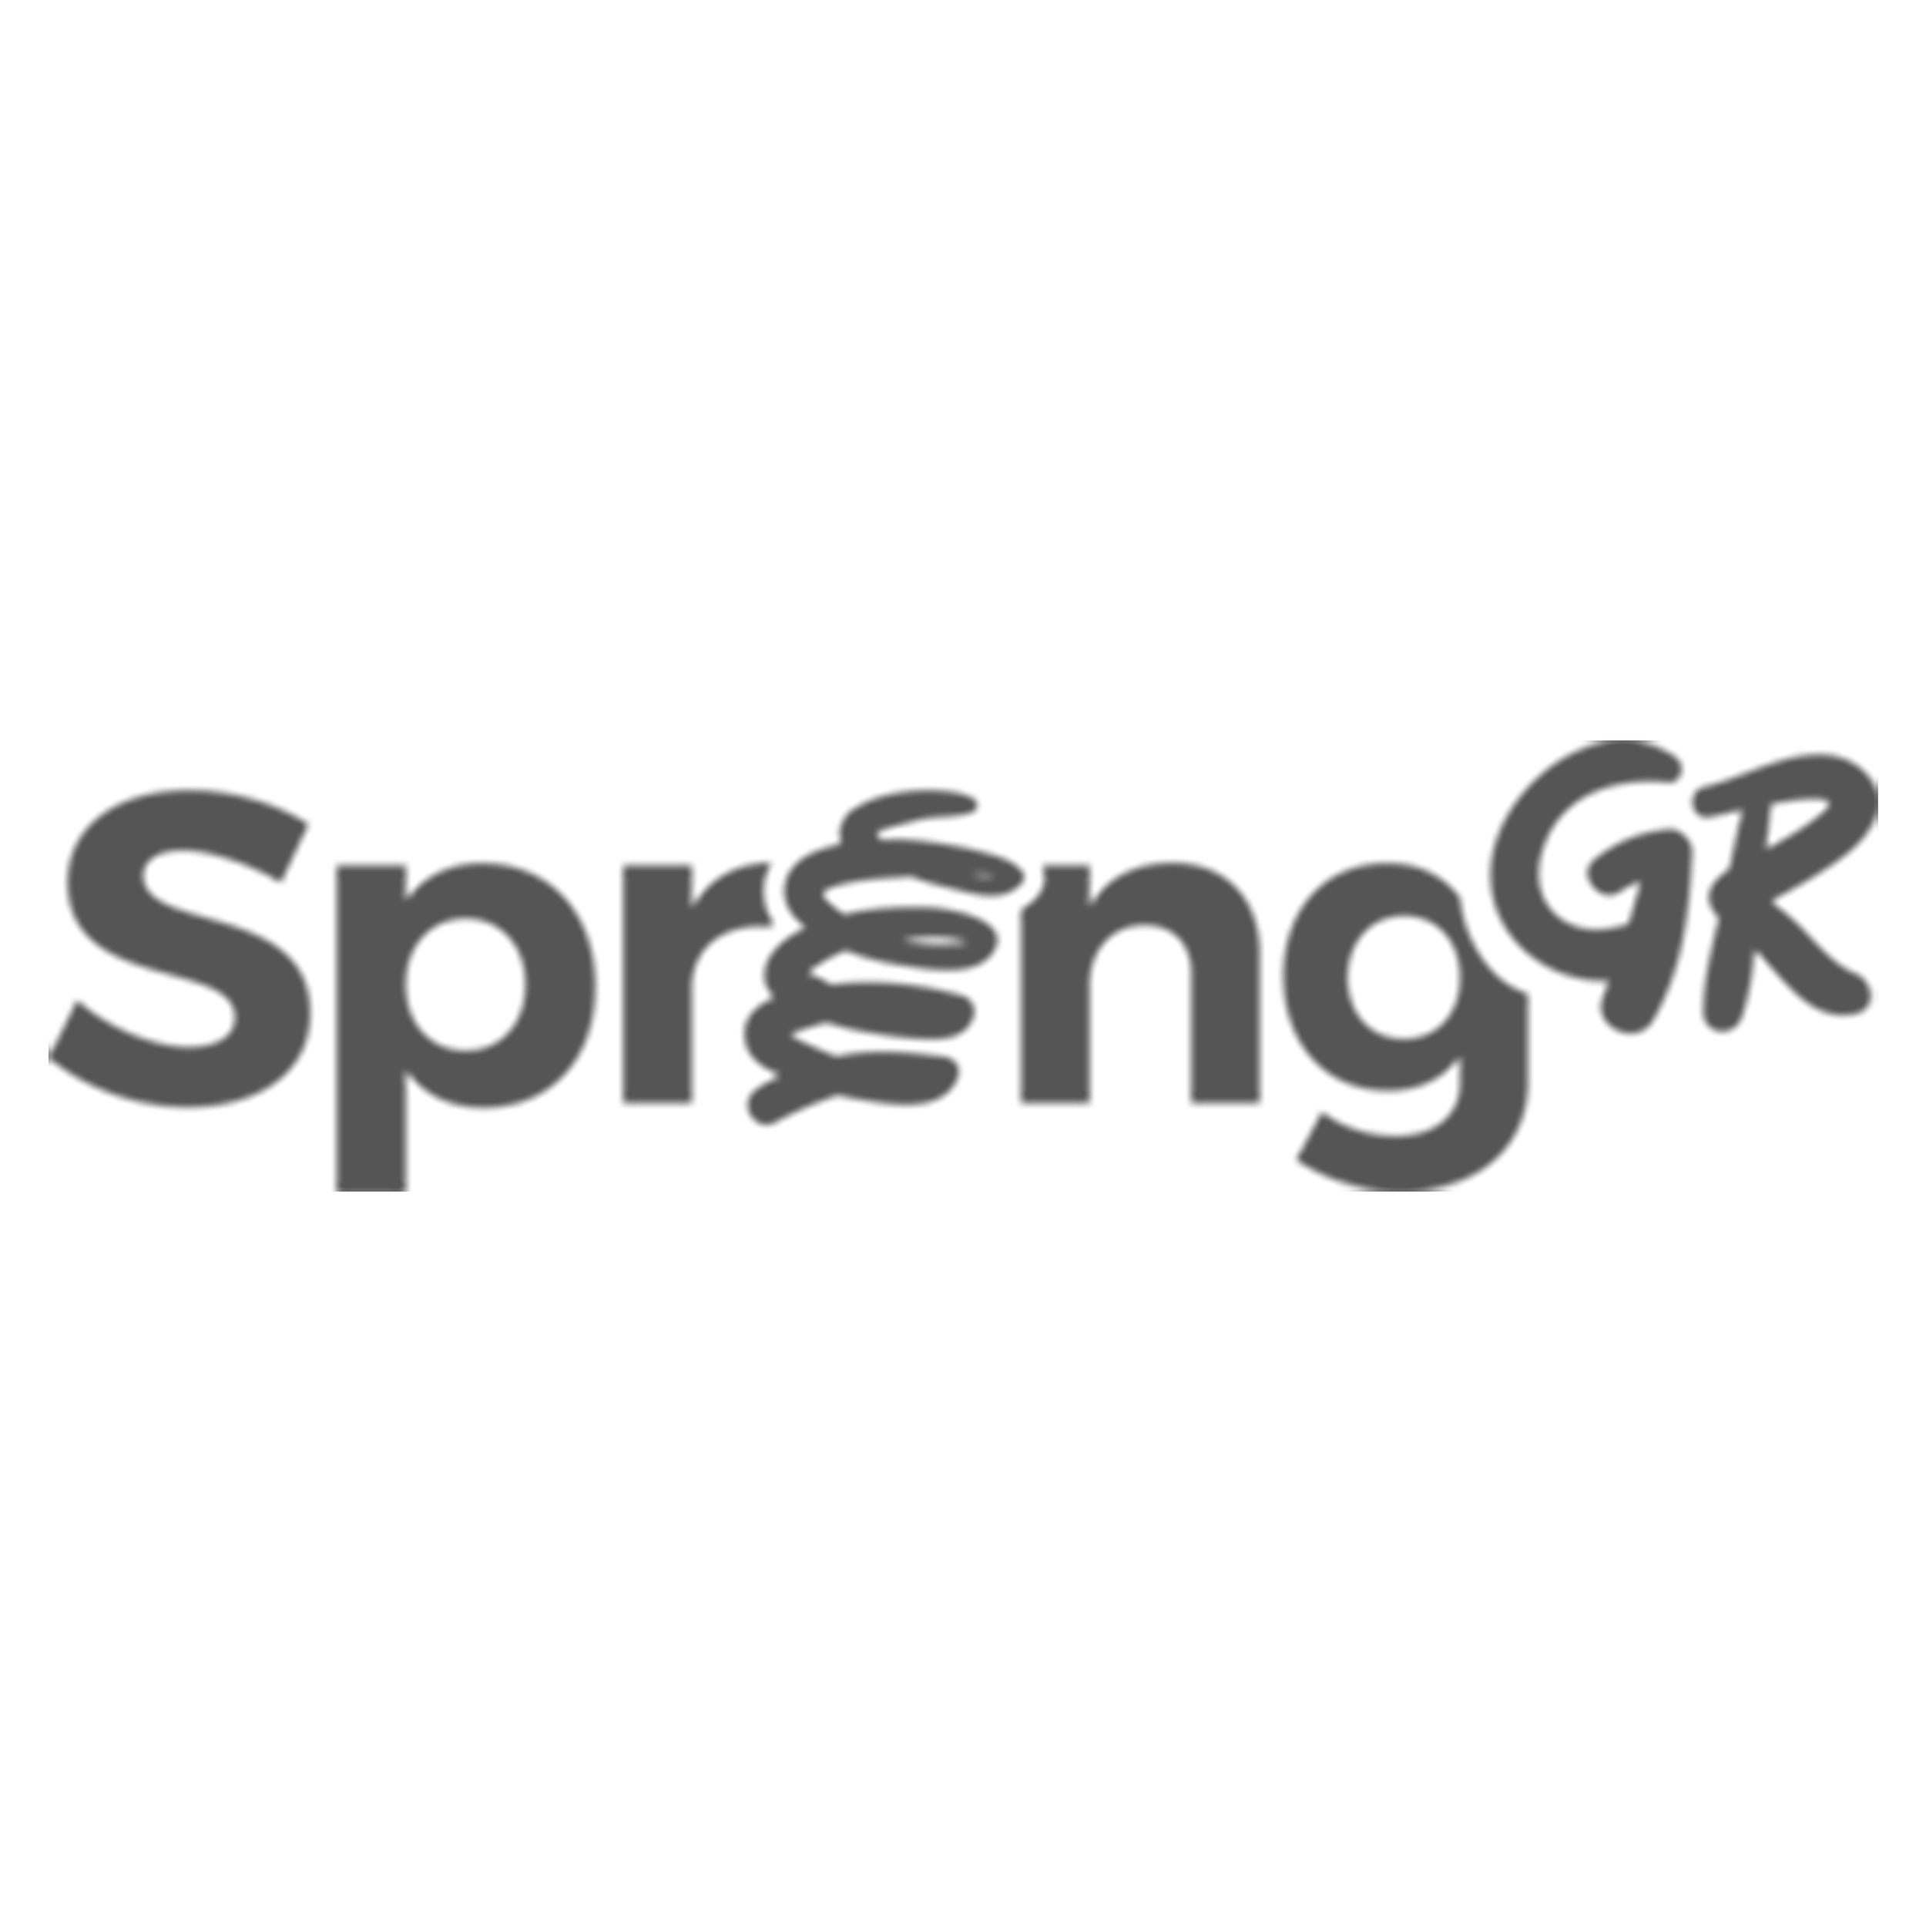 SpringGR_gray.jpg